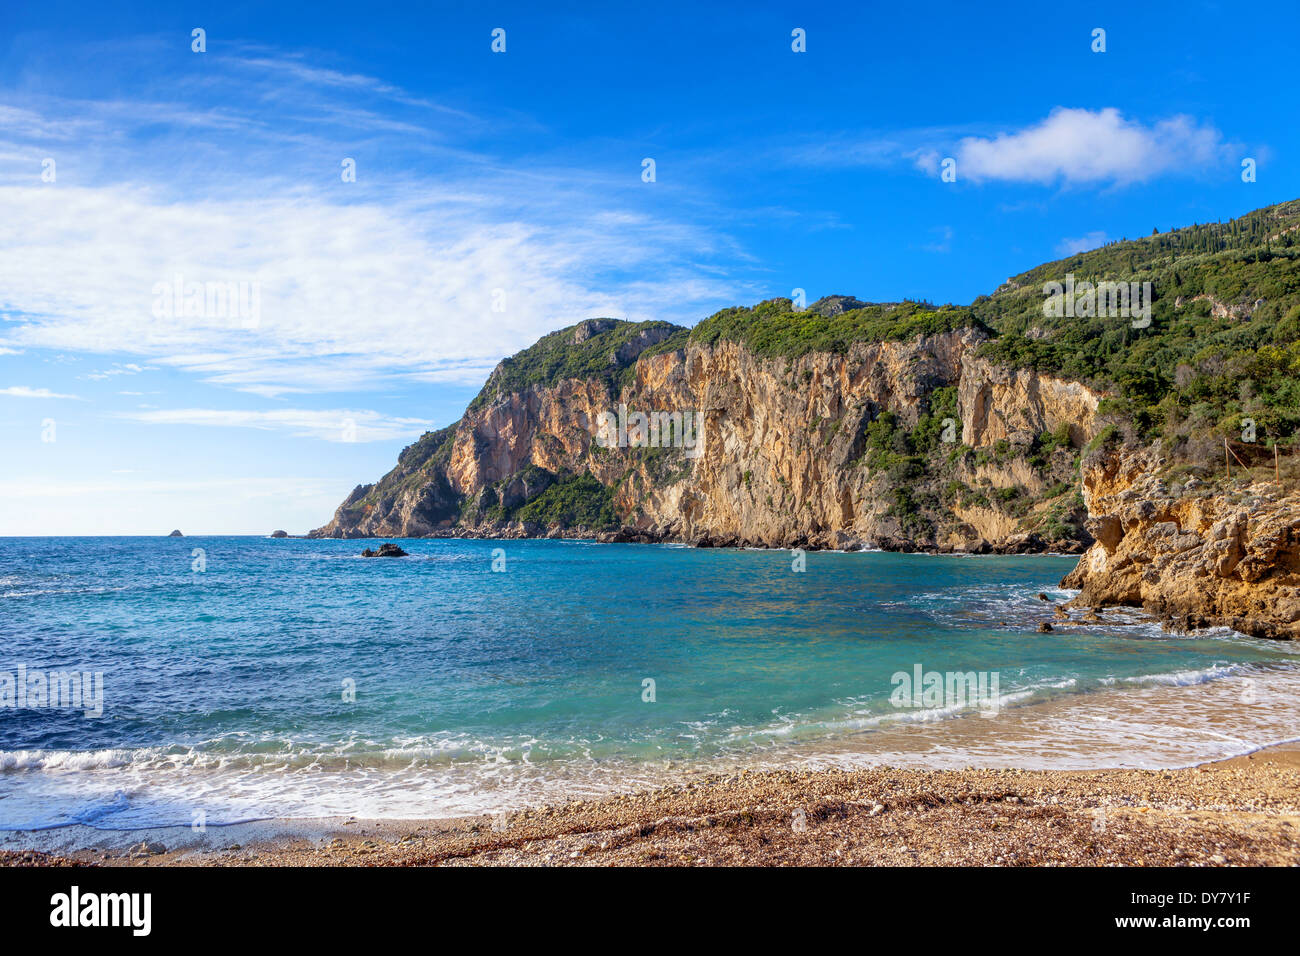 Ein Teil von Paleokastritsa Beach, ein beliebtes Ausflugsziel auf der Insel Korfu in Griechenland. Stockfoto